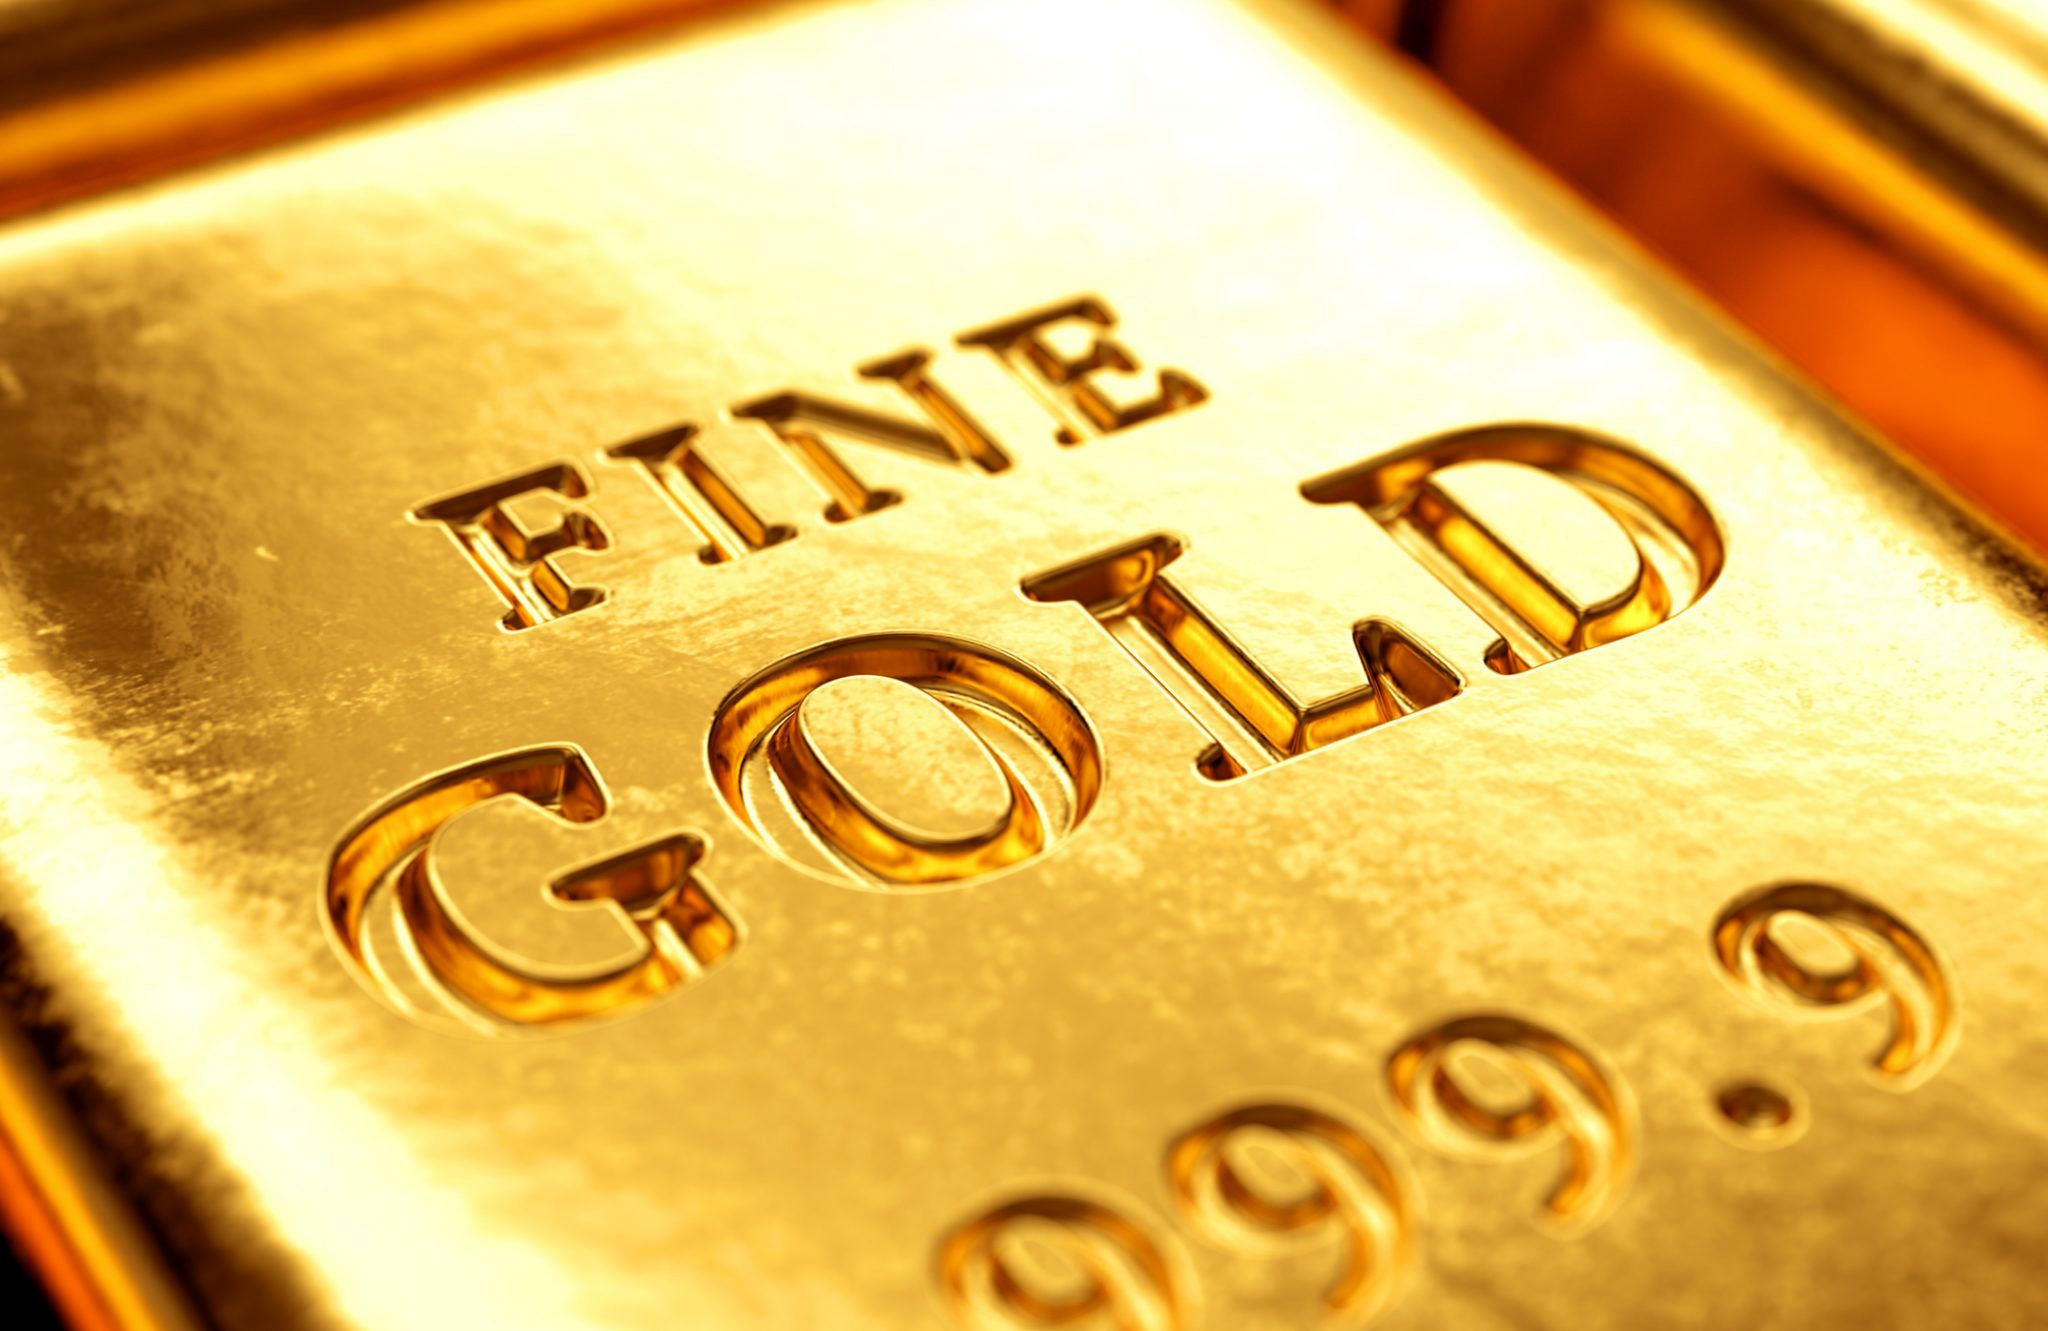 هدف بعدی طلا همچنان ارتفاع 1900 دلاری است؟